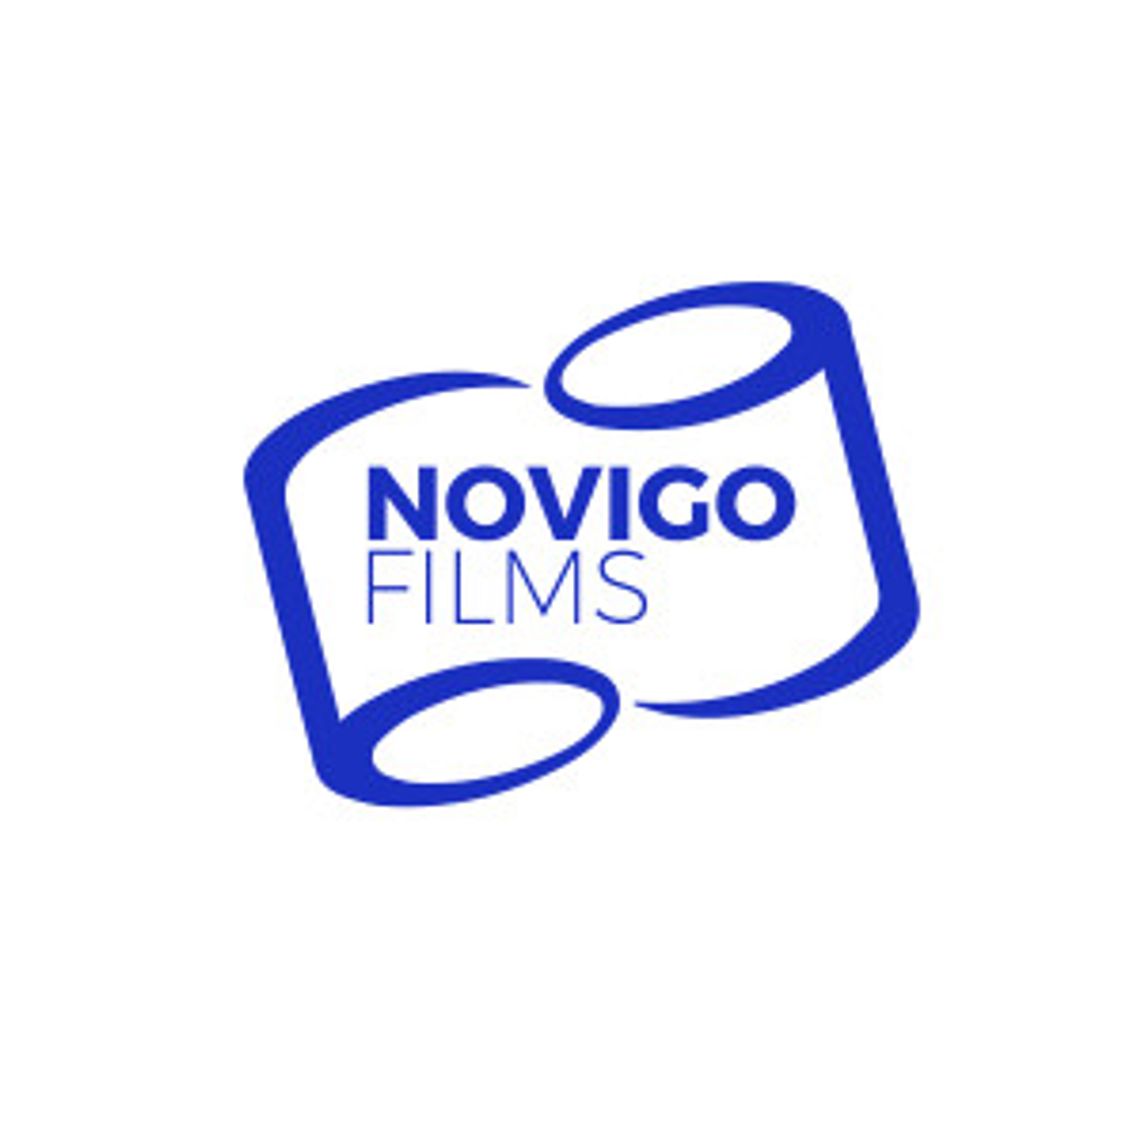 Zgrzewarki półautomatyczne do folii i maszyny kloszowe do pakowania - Novigo Films